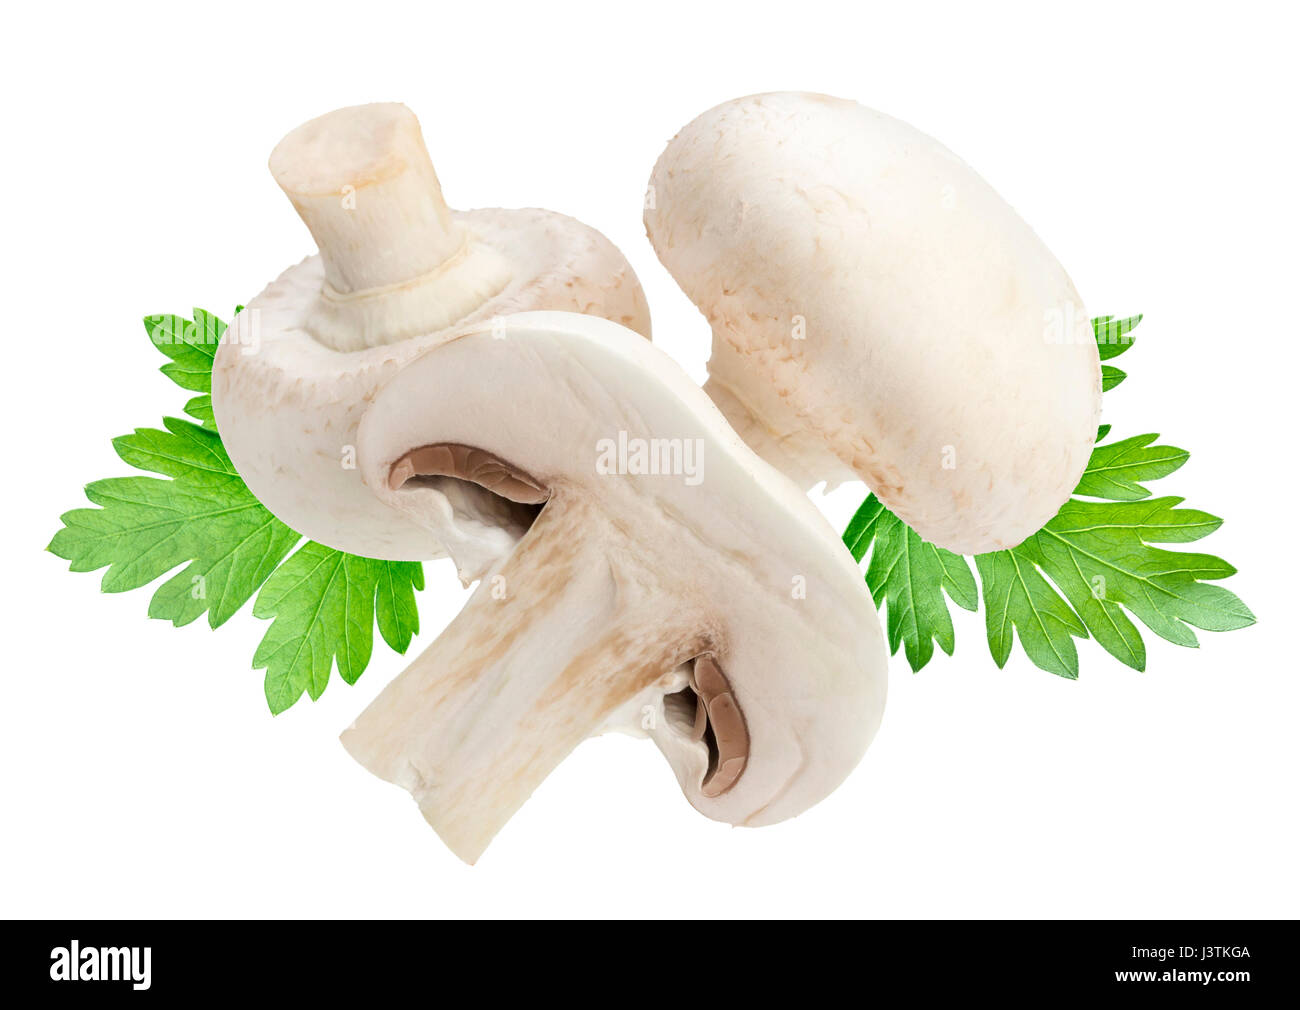 Champignon mushroom isolated on white background Stock Photo